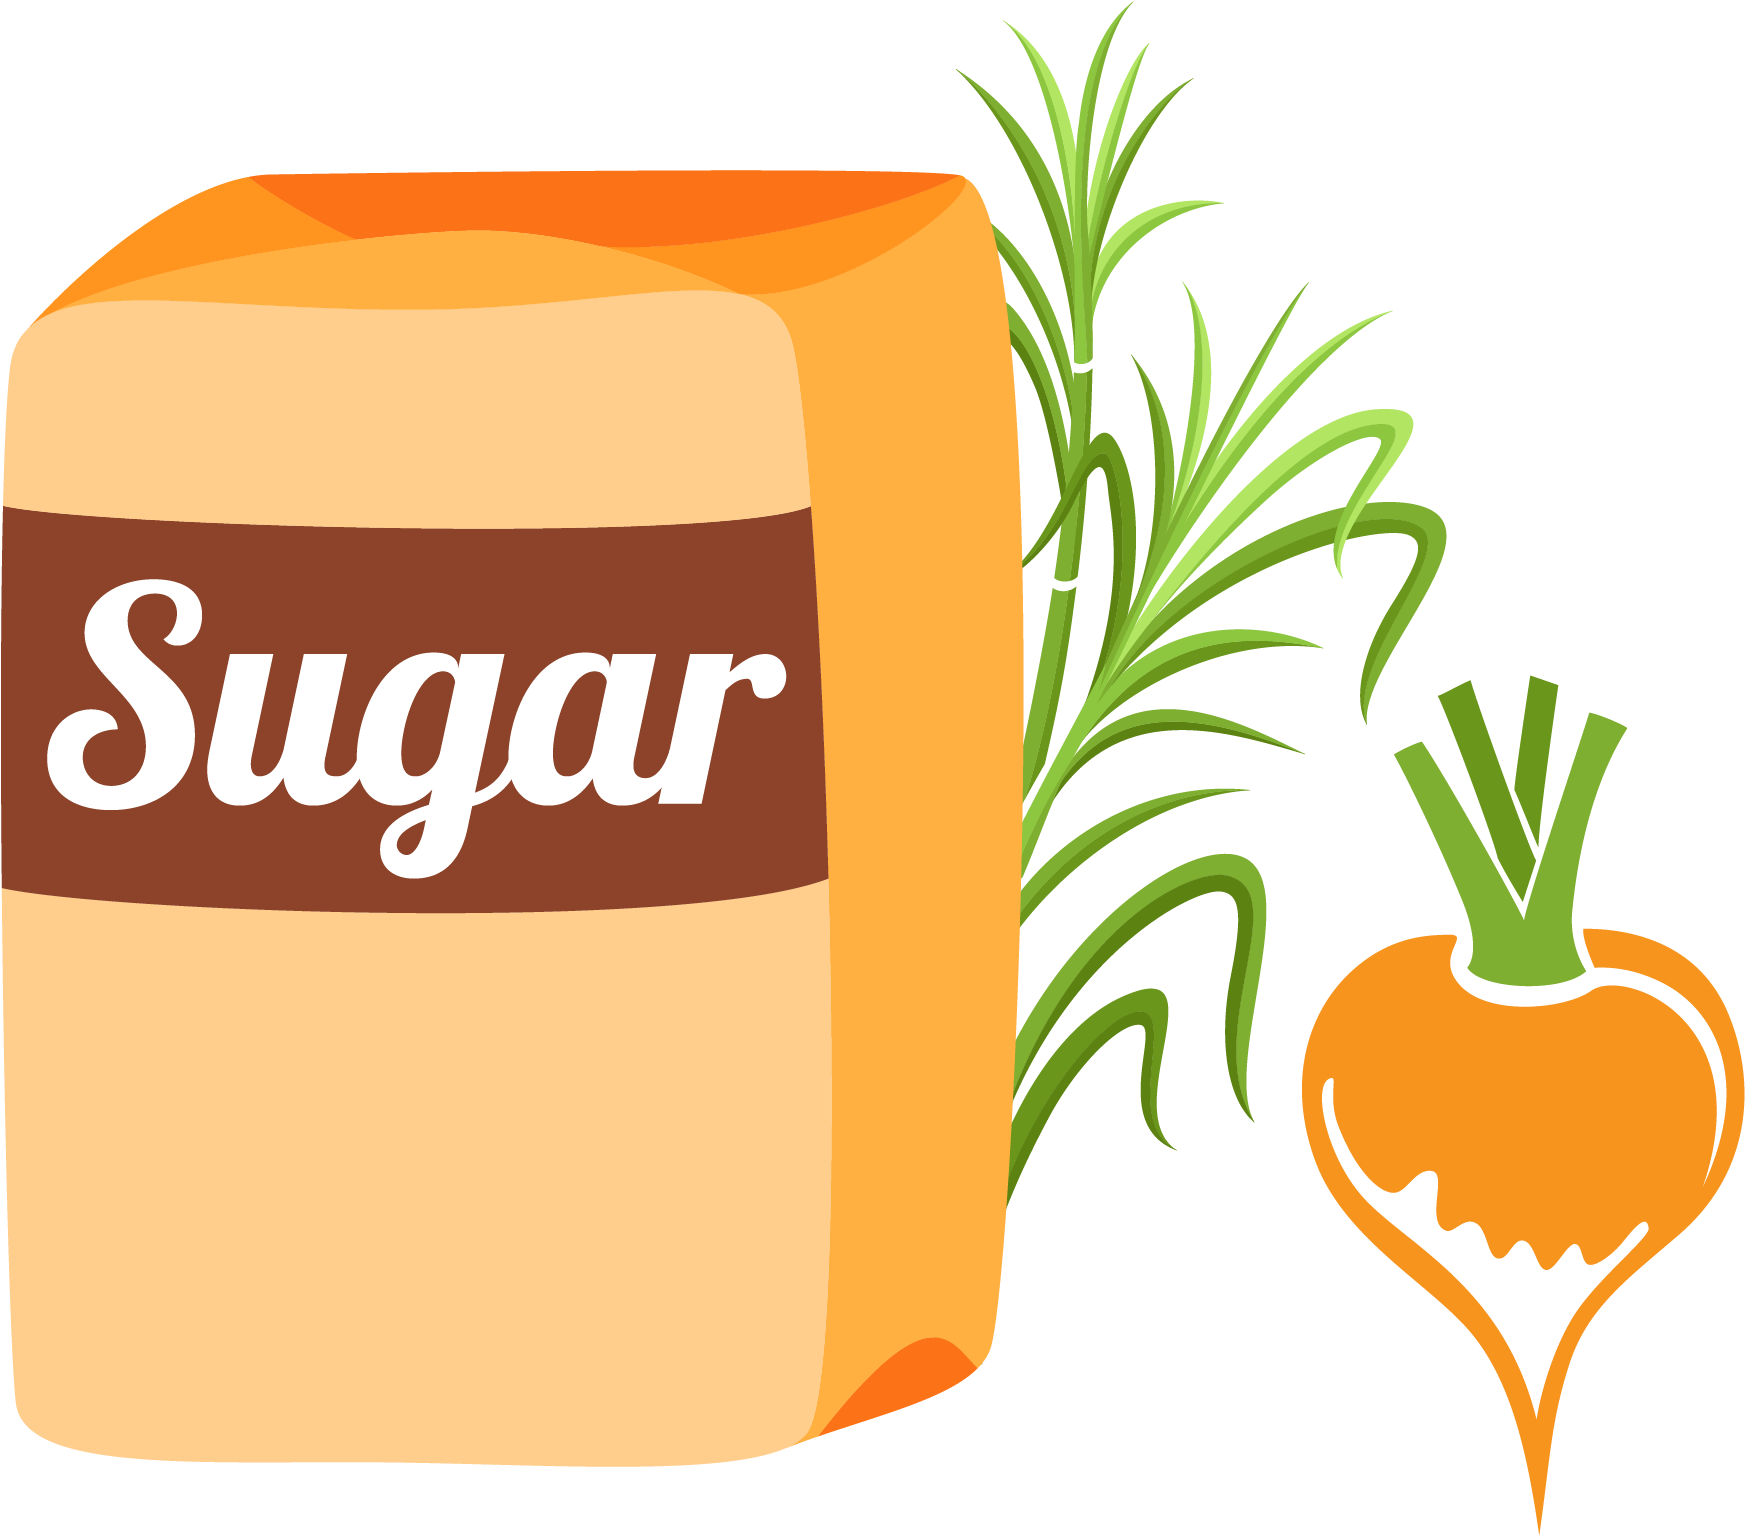 Brown Sugar Logo PNG Image Background